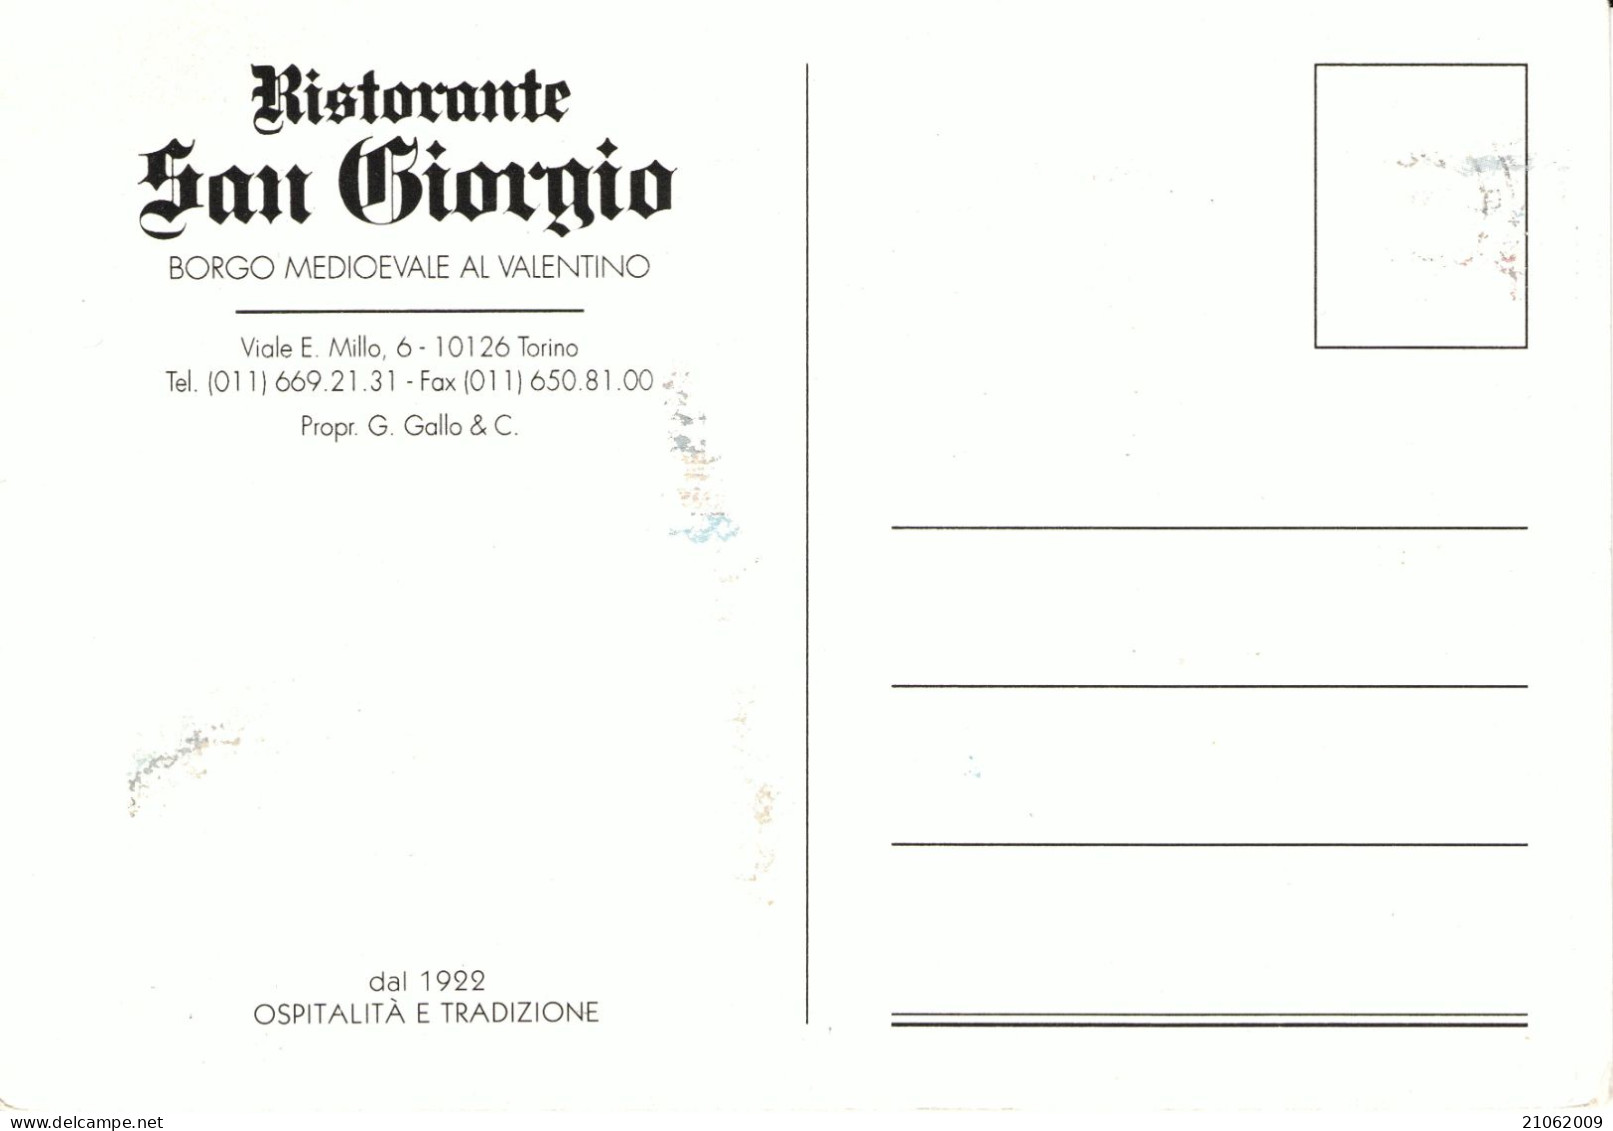 TORINO - CASTLE CHATEAU SCHLOSS CASTELLO DEL VALENTINO BORGO MEDIOEVALE FIUME PO RISTORANTE SAN GIORGIO, NOTTURNO - NV - Castello Del Valentino